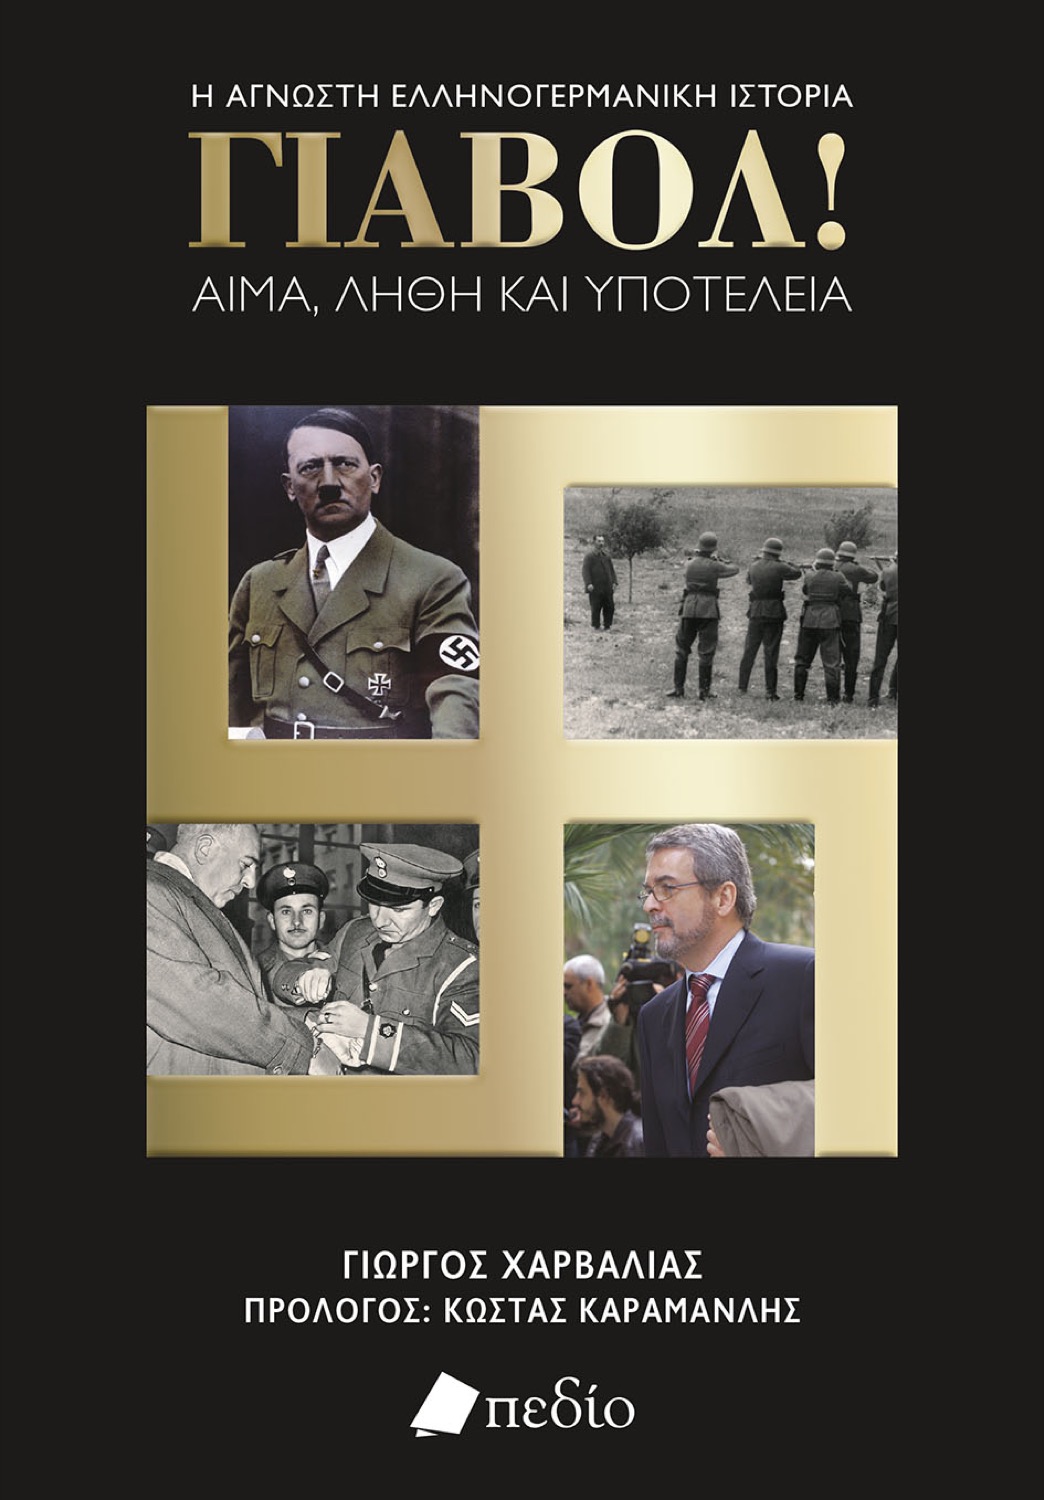 Παρουσίαση βιβλίου του δημοσιογράφου Γ. Χαρβαλιά στο Χατζηγιάννειο